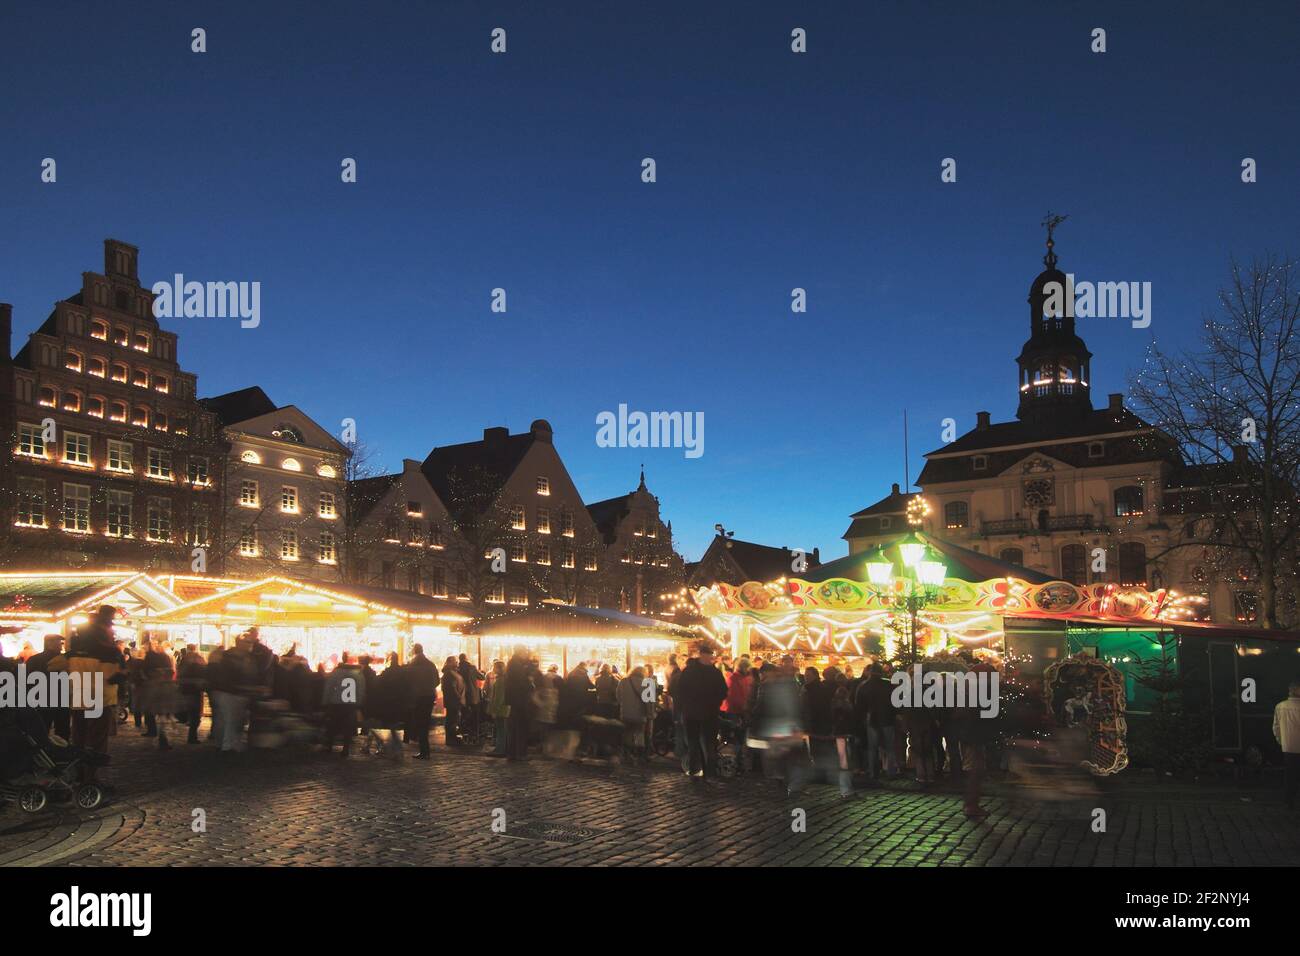 Weihnachtsmarkt vor dem alten Rathaus, Am Markt, Lüneburg, Lüneburger Heide, Niedersachsen, Deutschland, Europe | Christmas market in front of the old Stock Photo